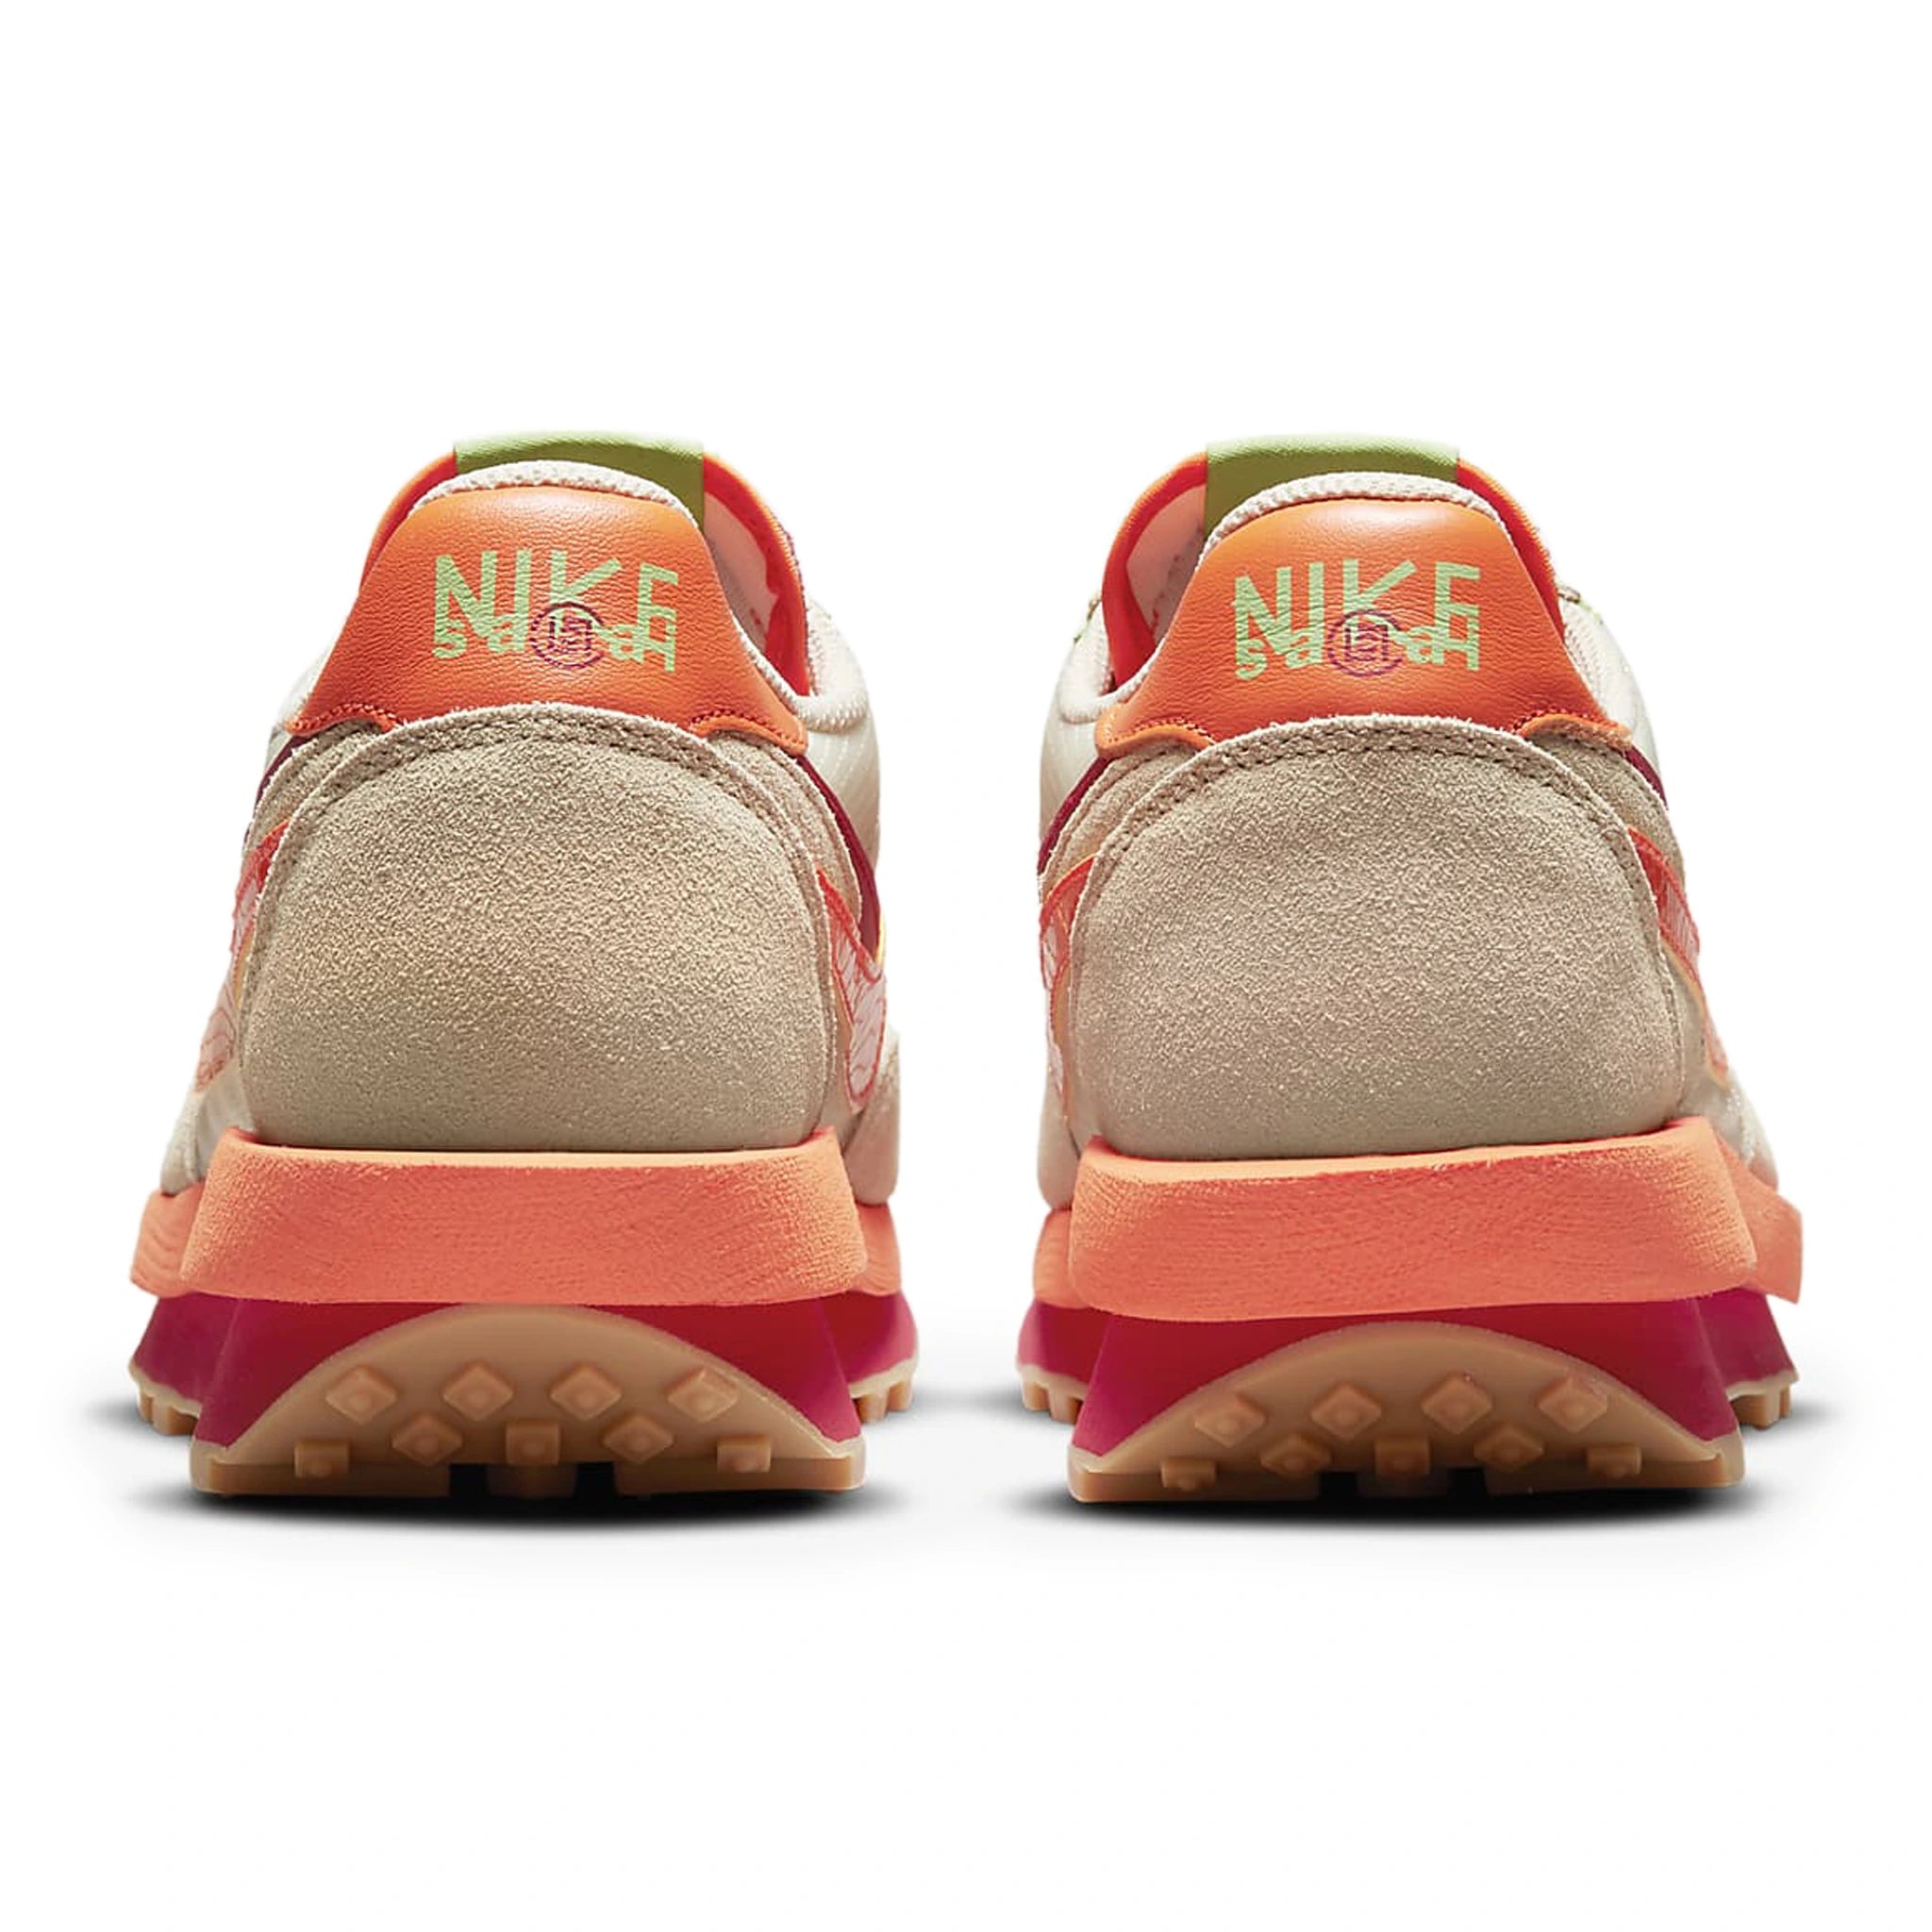 Back view of Nike x Sacai LD Waffle CLOT Net Orange Blaze DH1347-100